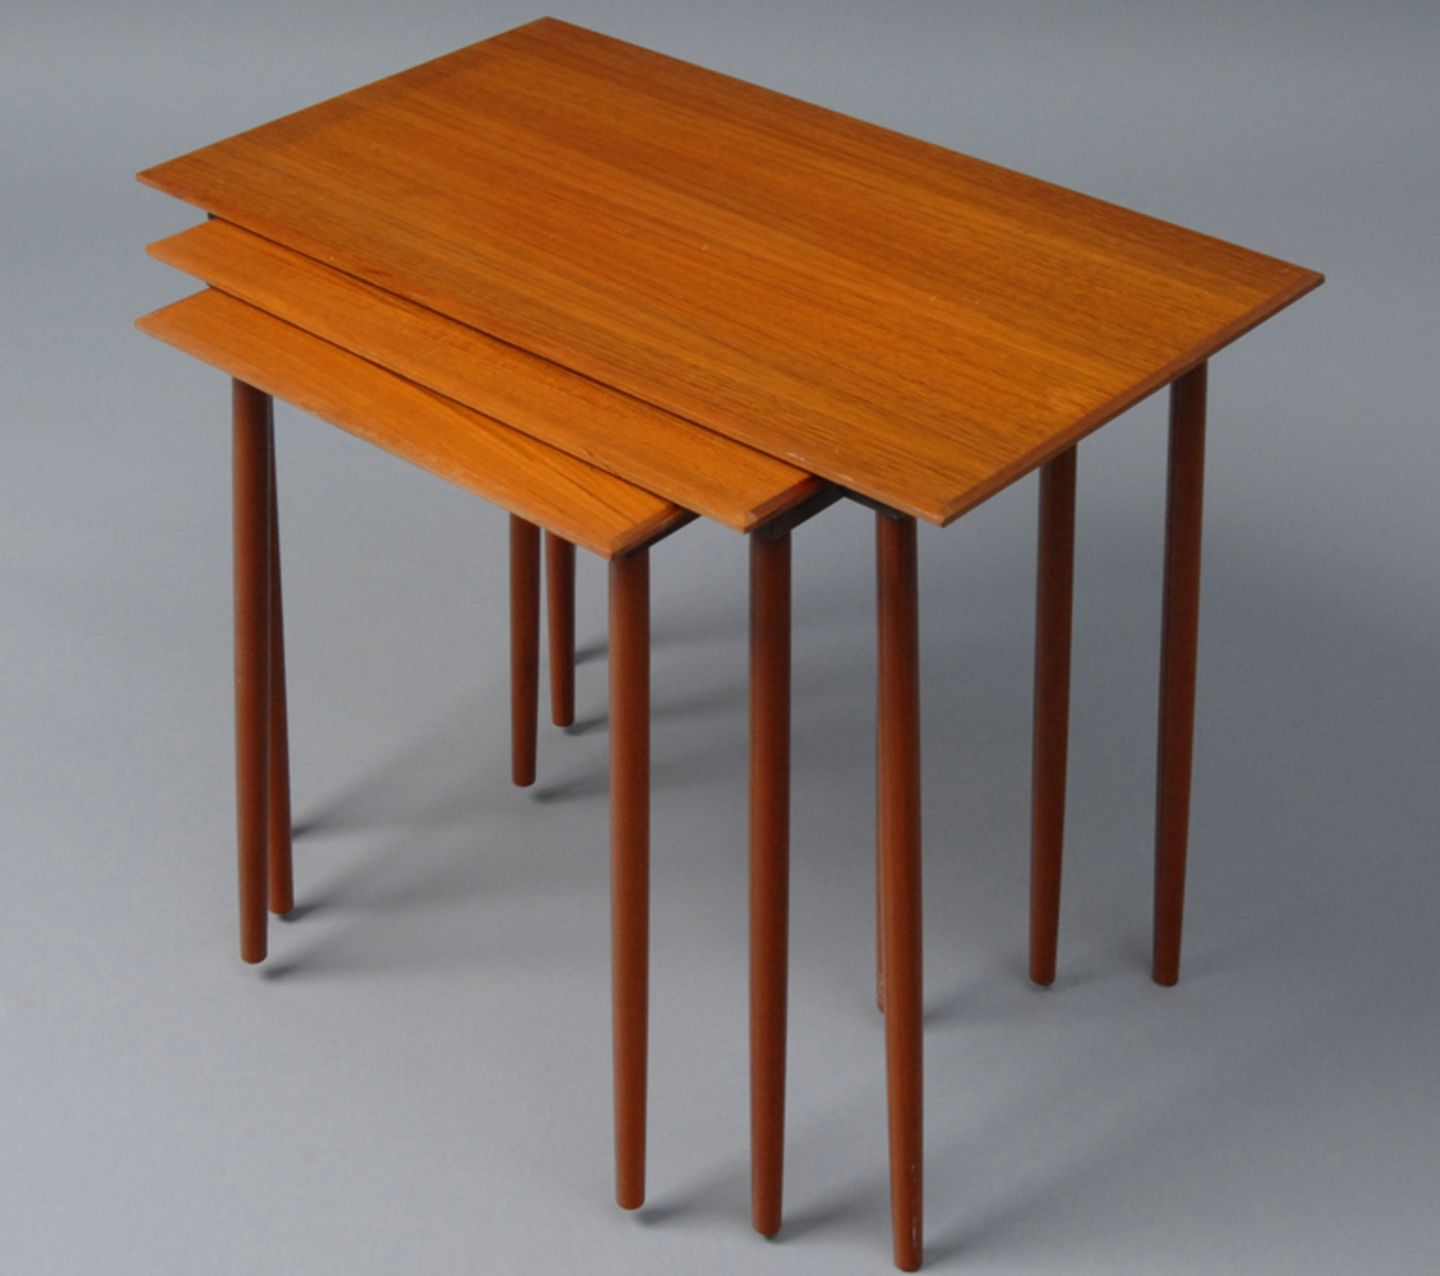 Dreisatz-Tisch "Trial", Werksentwurf von Ikea